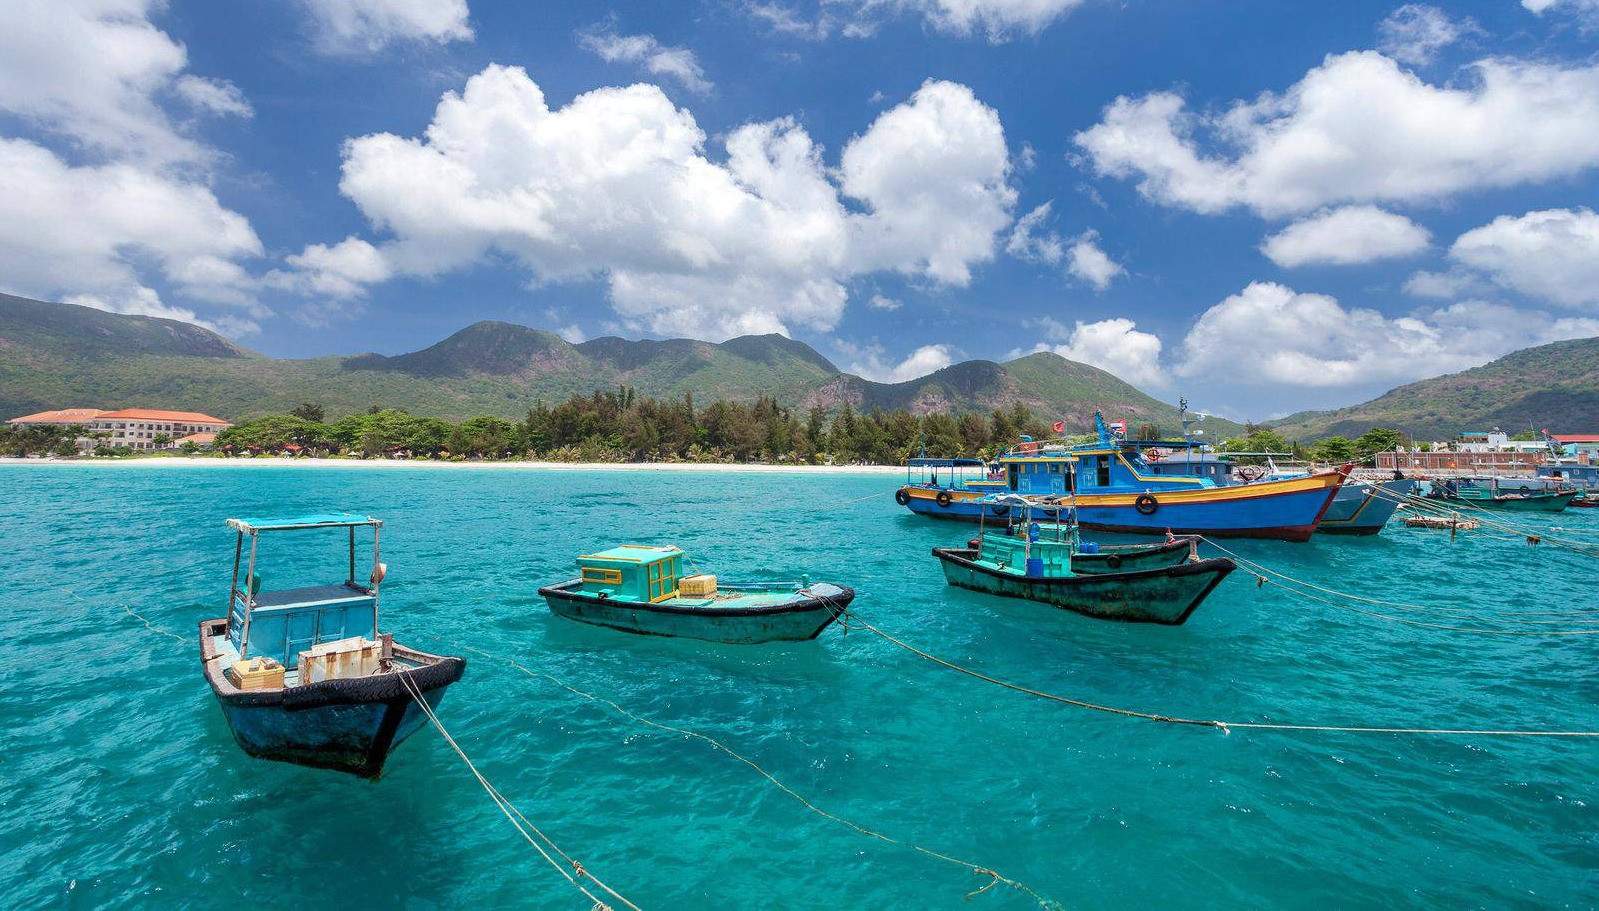 Luật biển Việt Nam là một chủ đề thú vị, nó giúp tăng hiểu biết và khám phá về thế giới biển và vai trò của Việt Nam trong việc duy trì an ninh, an toàn trên biển. Hãy cùng khám phá những điều thú vị và giáo dục từ hình ảnh Luật biển VN.